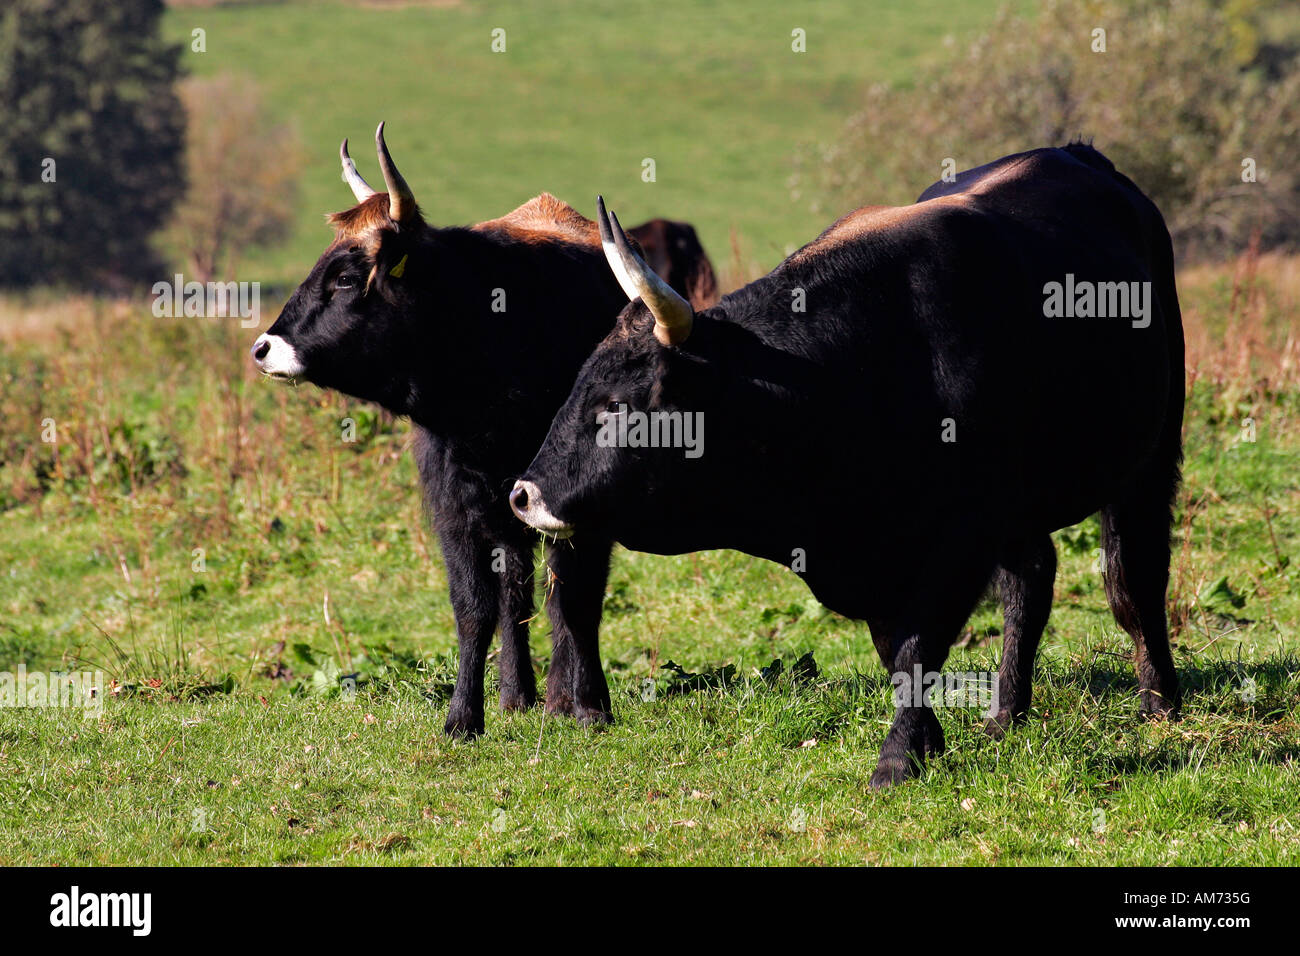 - Bovins Heck heck cattles - bull et de l'aurochs - vache - Bos primigenius f paire (taurus). Banque D'Images